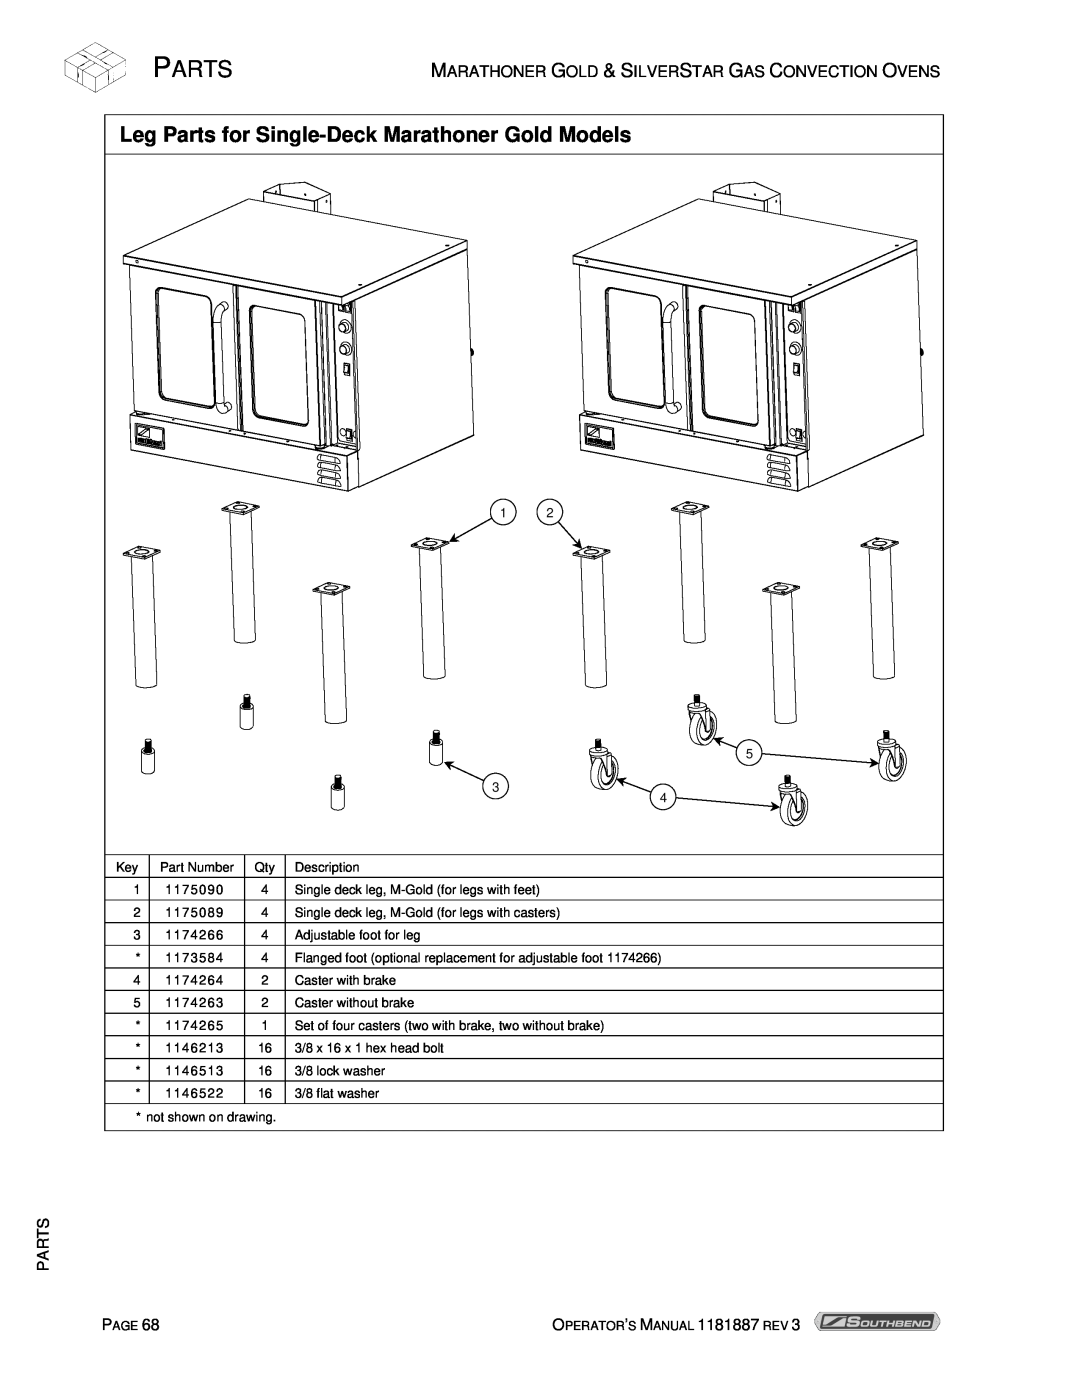 Southbend manual Leg Parts for Single-Deck Marathoner Gold Models 